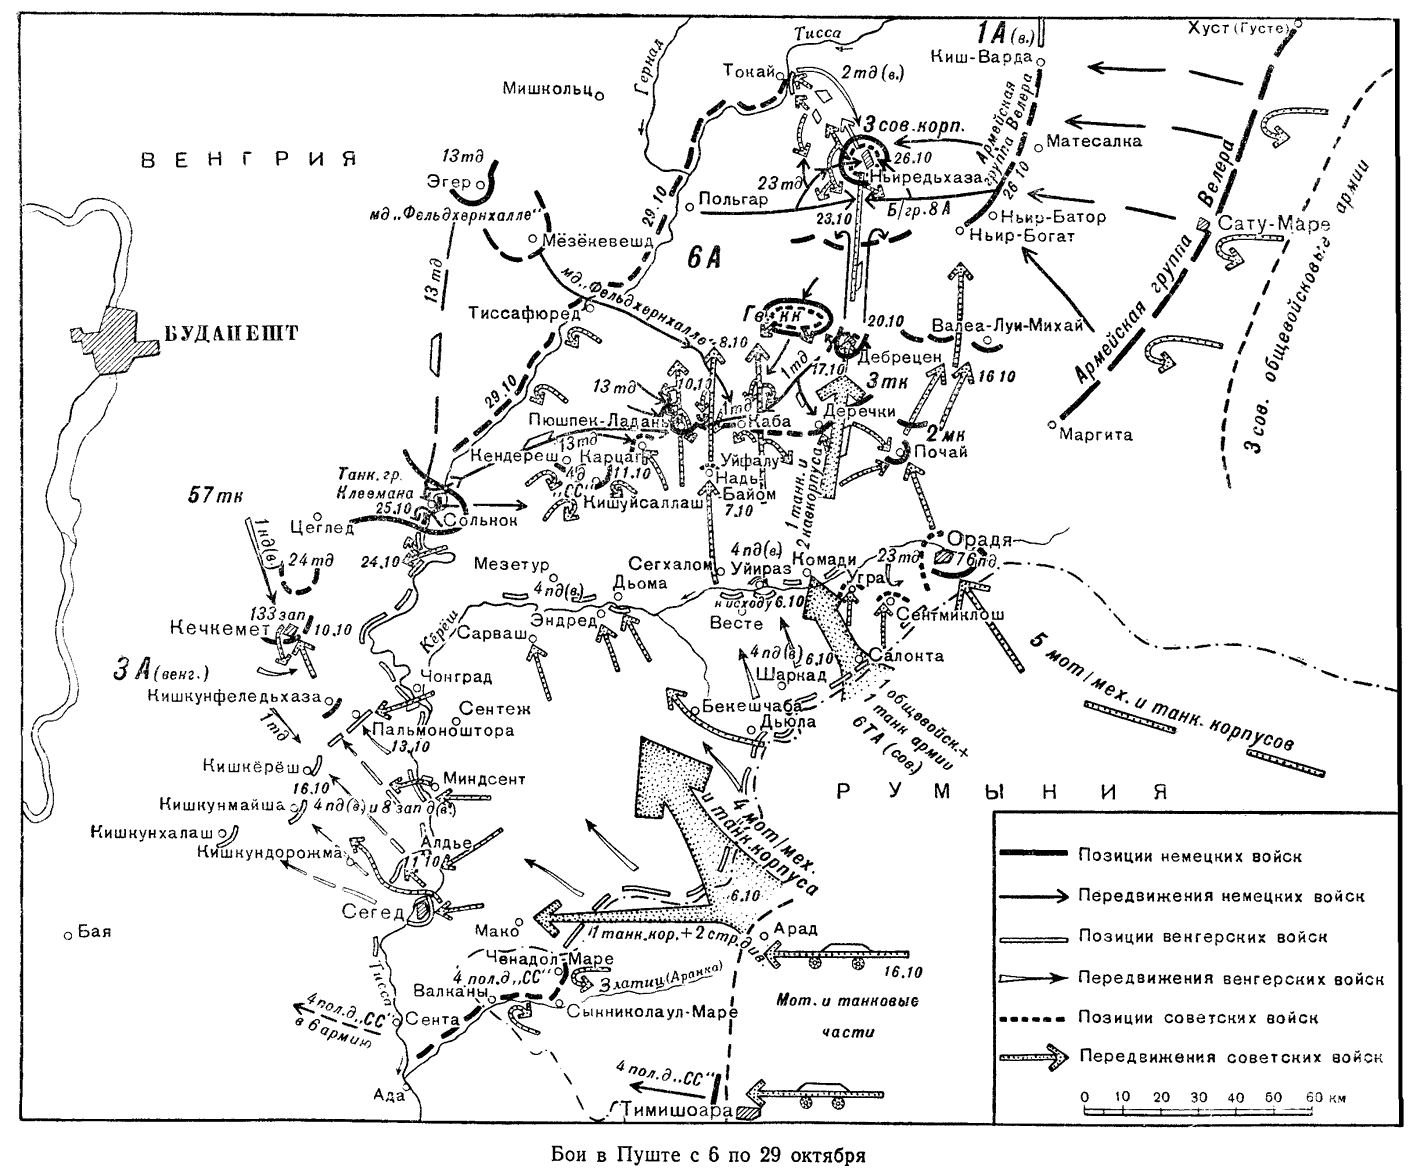 Карта - бои в Пуште с 6 по 29 декабря 1944, по Гансу Фриснеру